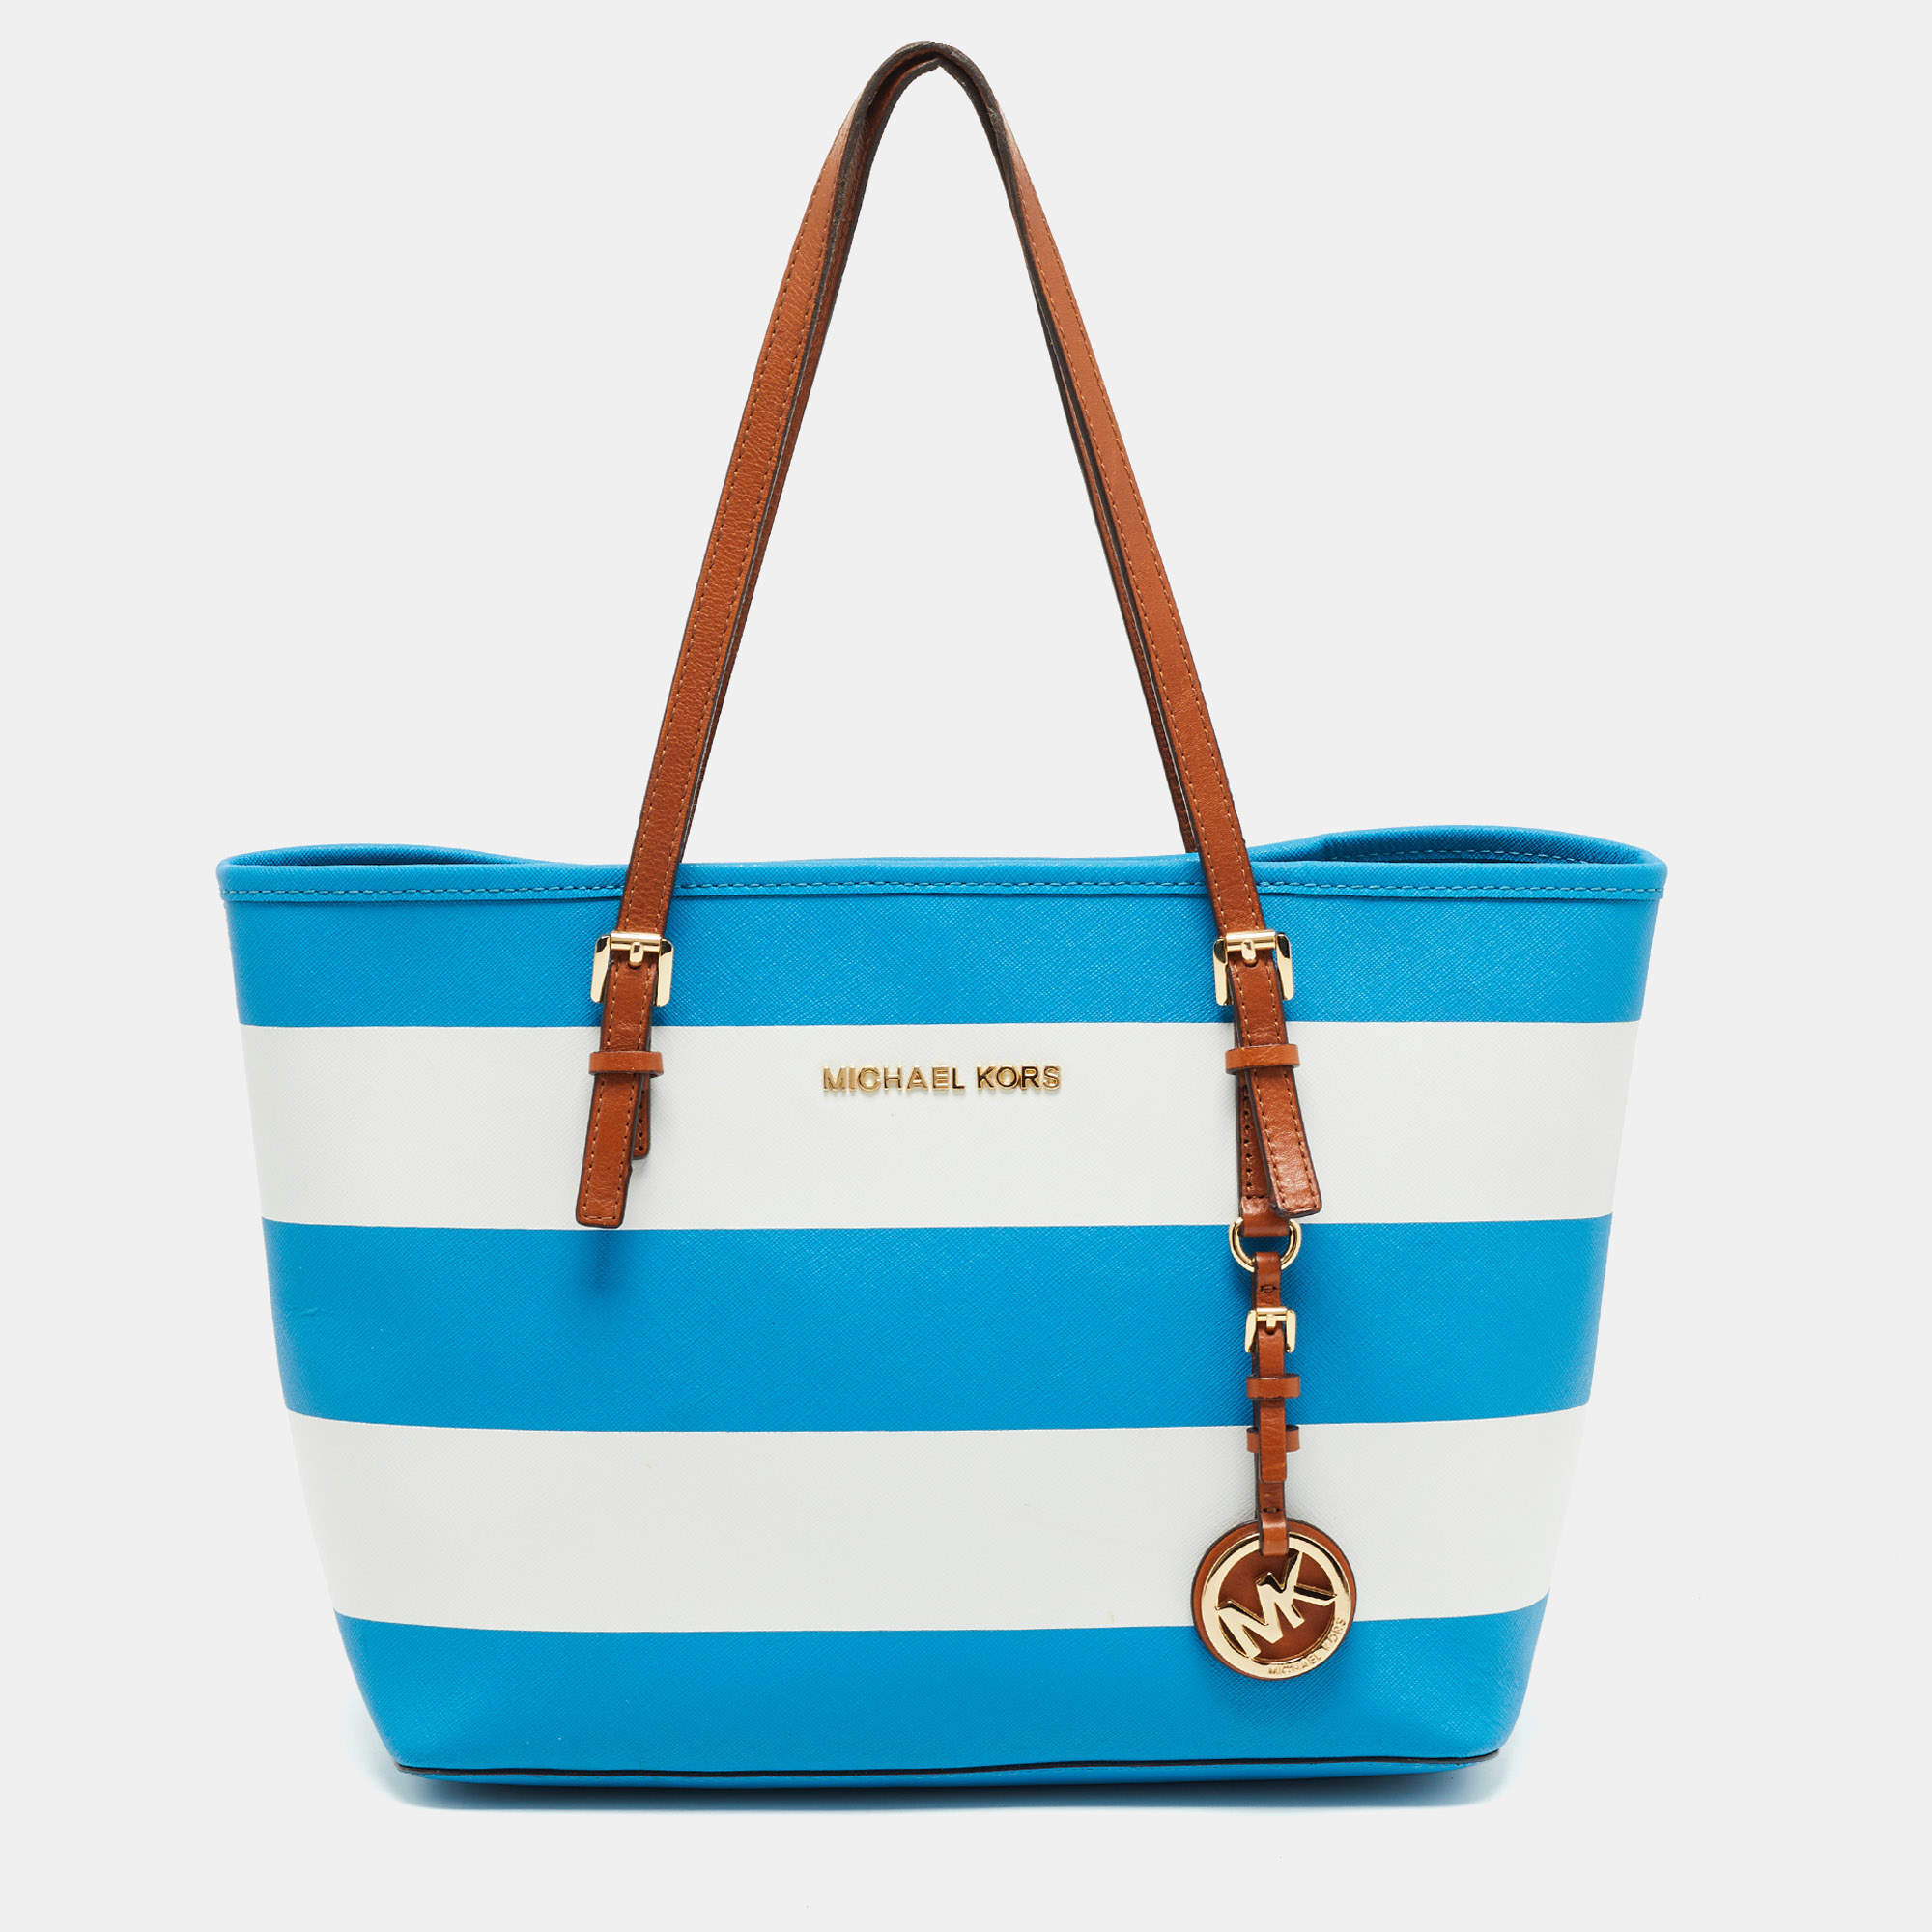 Order Women's Michael Kors MK Speedy Handbags Online From Branded